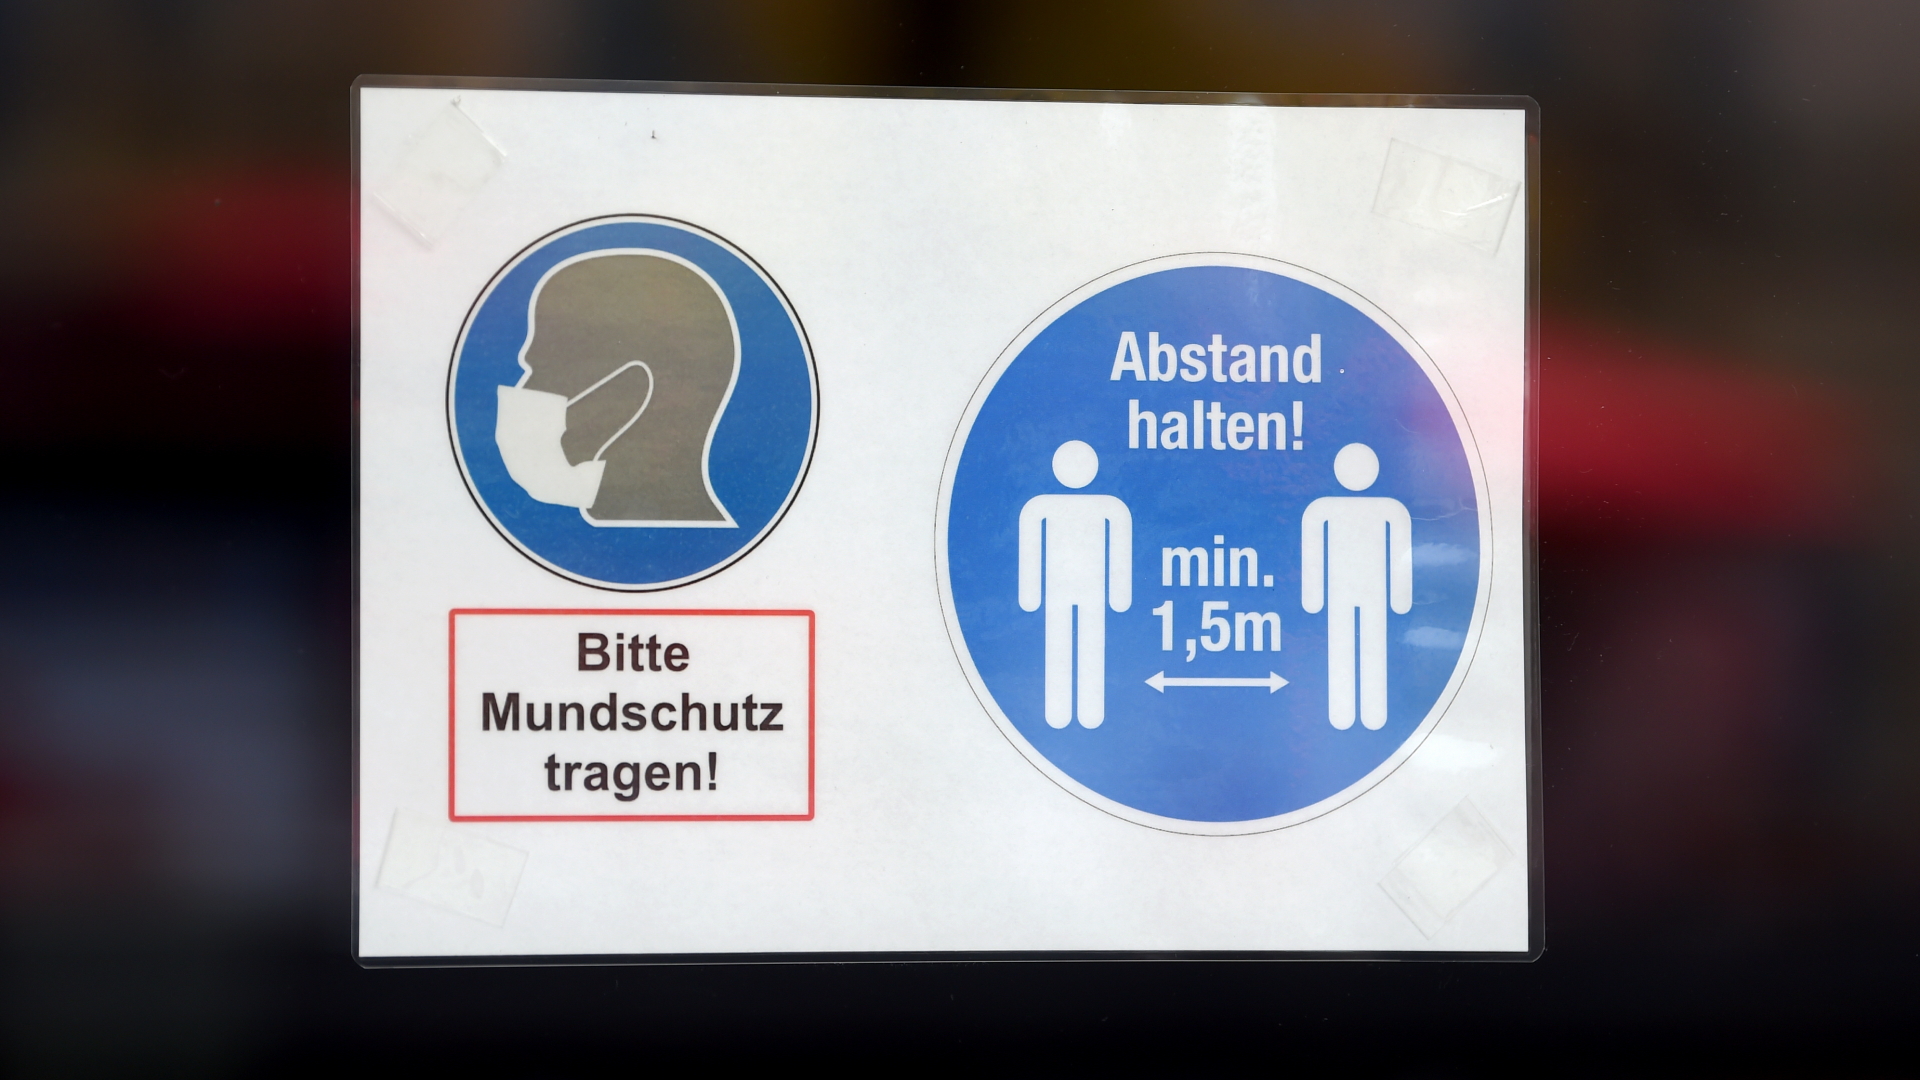 An der Tür eines Geschäfts in Berlin hängt ein Schild mit der Aufschrift "Bitte Mundschutz tragen!" und "Abstand halten! min. 1,5m" | dpa